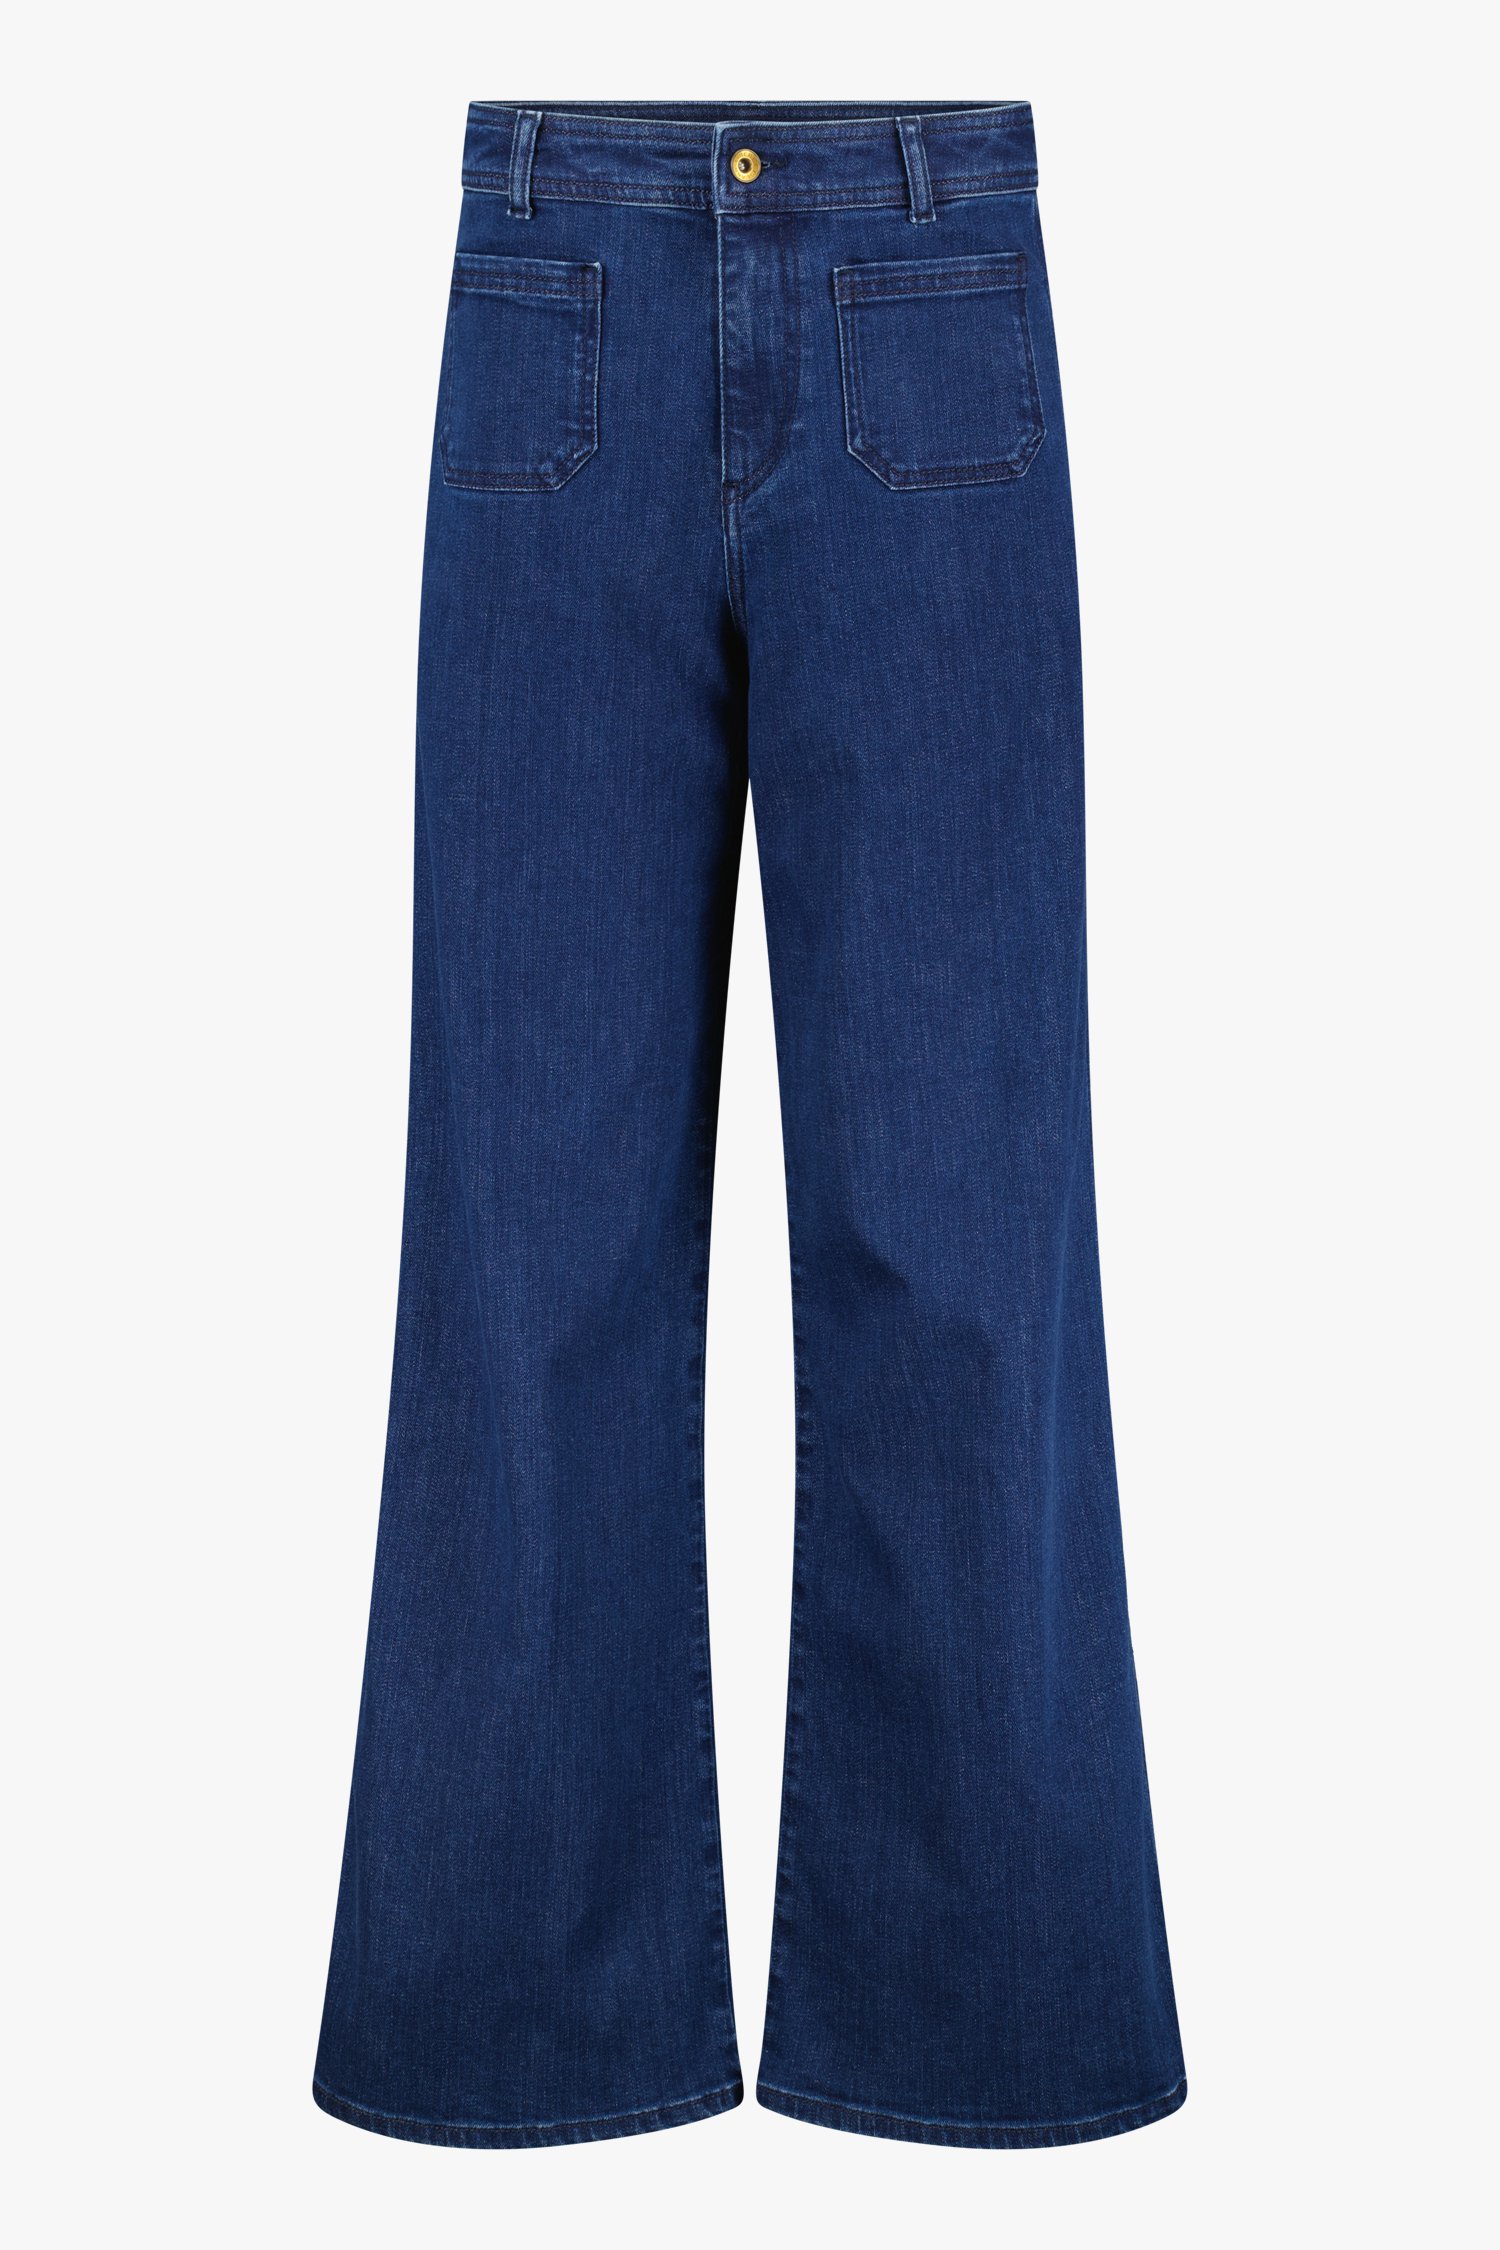 Blauwe jeans - wide leg  van Liberty Island Denim voor Dames